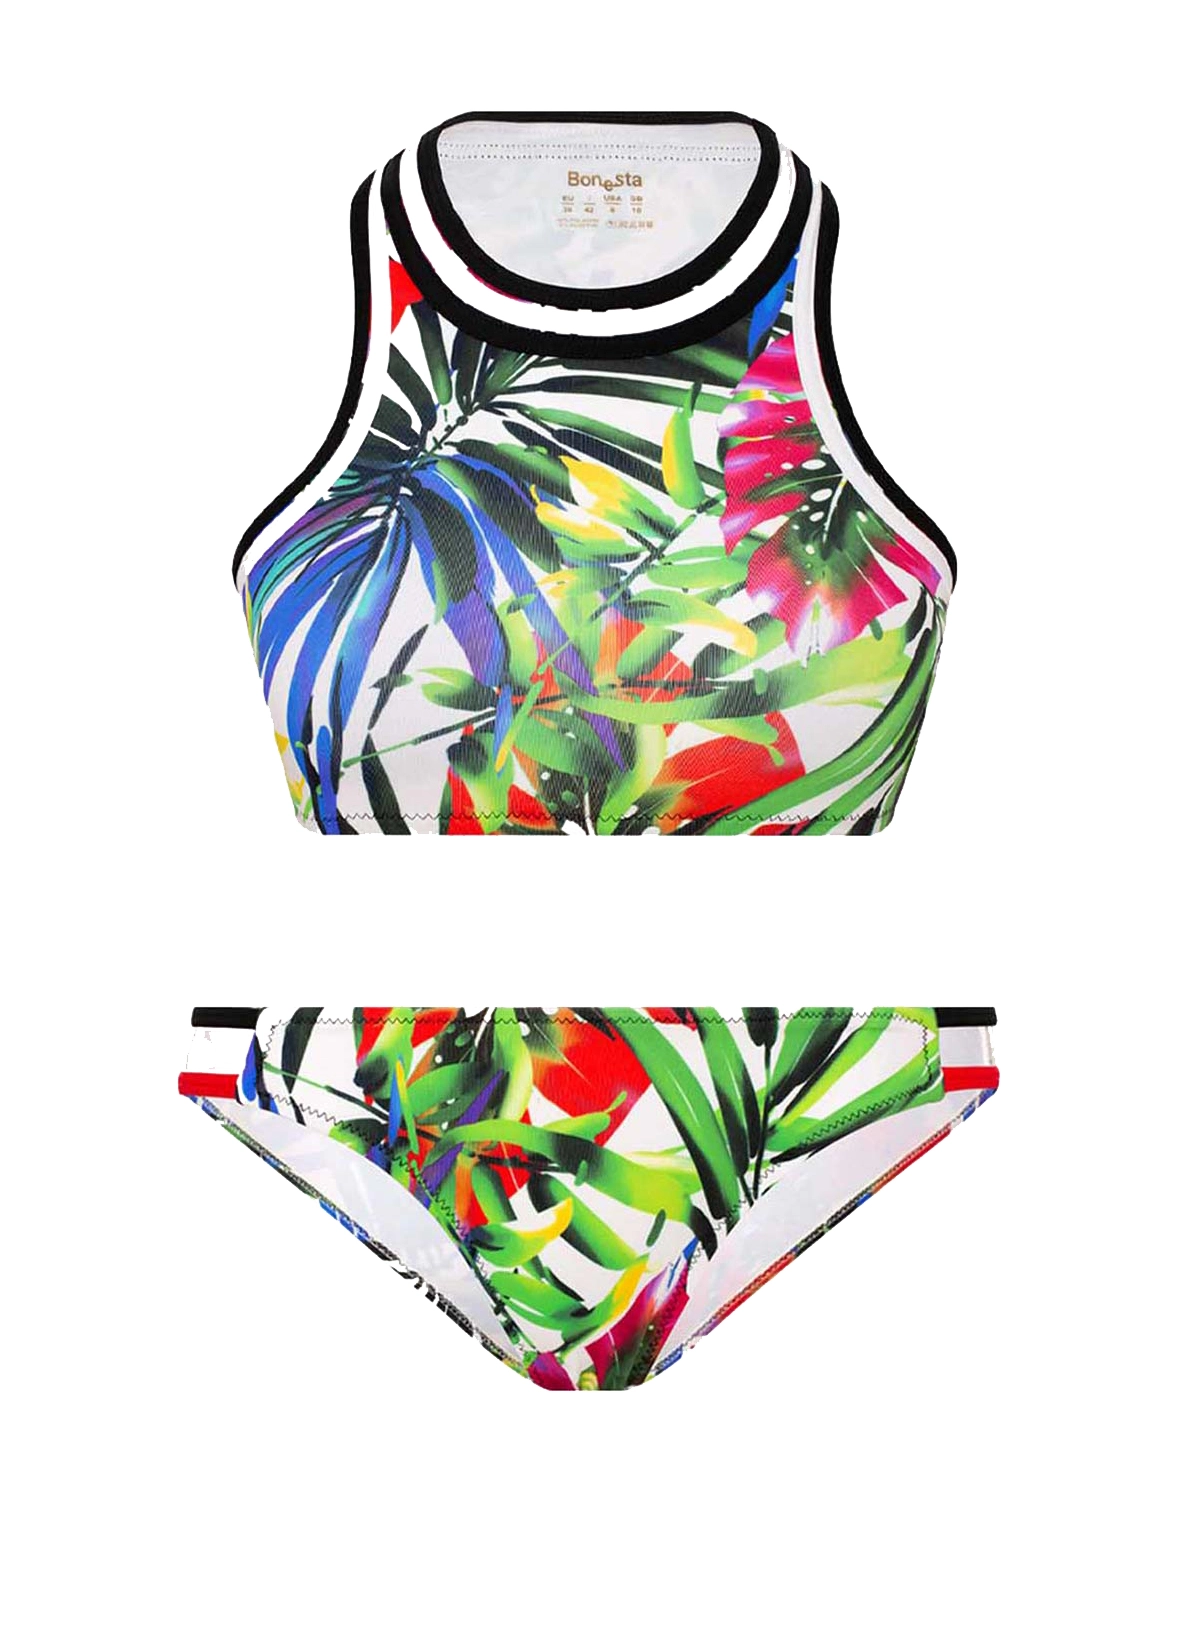 Renkli Yaprak Desenli Atlet Bikini